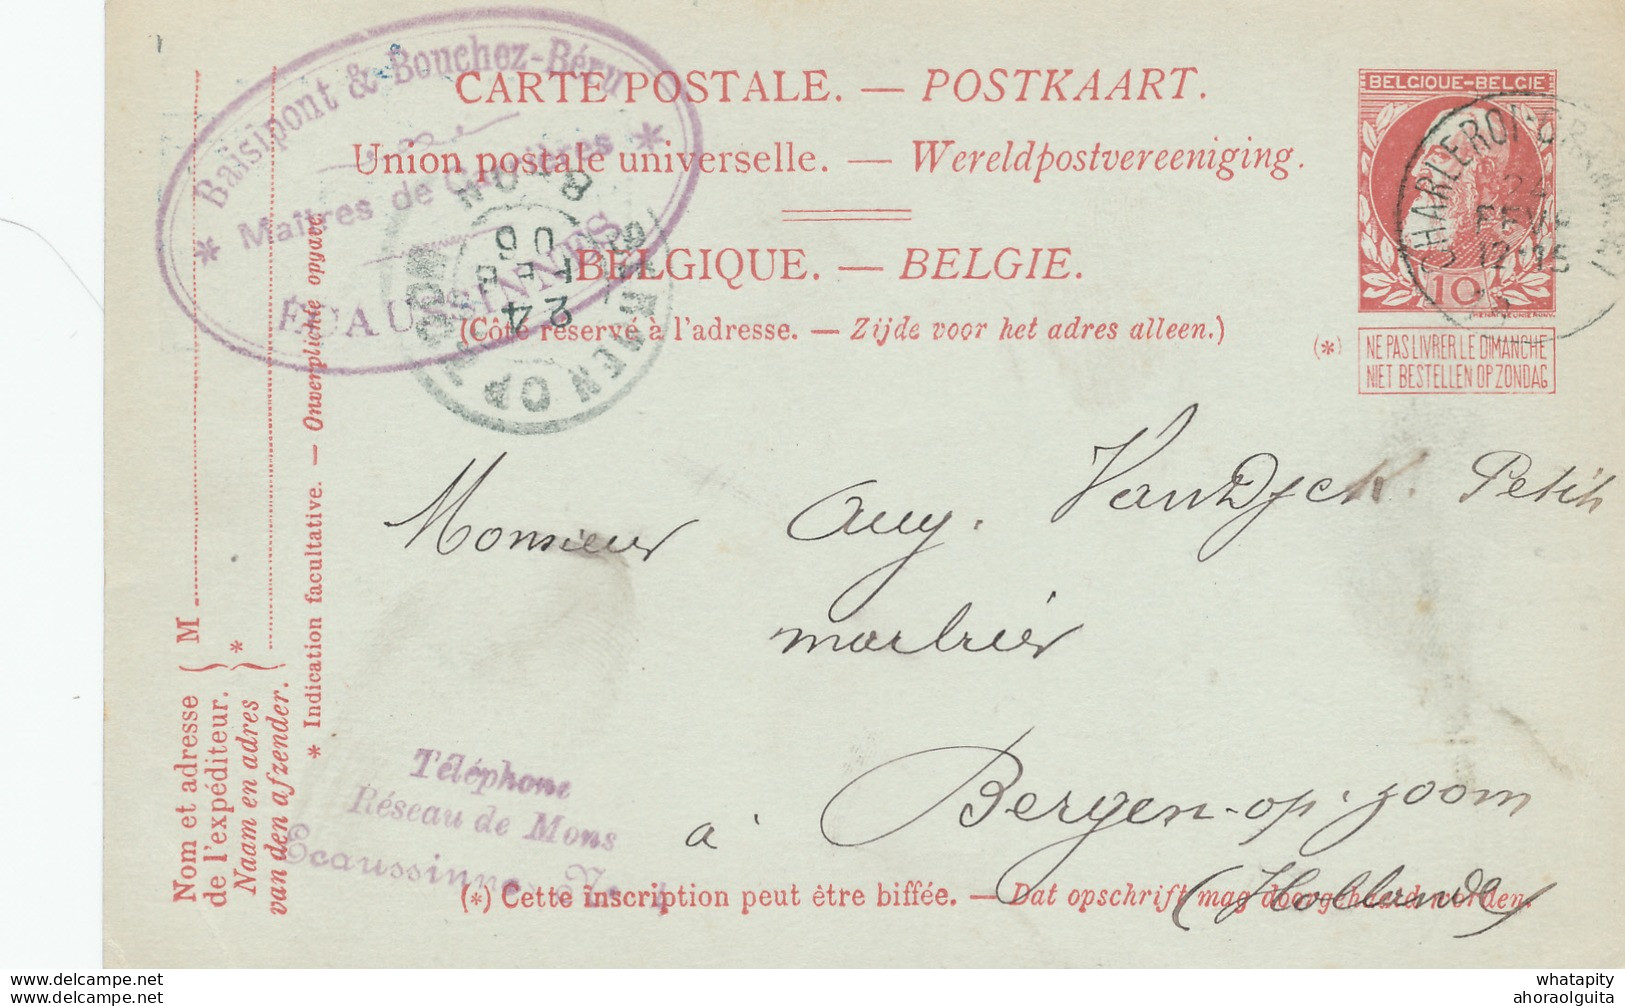 DDW704 - Entier Postal Grosse Barbe AMBULANT CHARLEROI-GRAMMONT 1906 - Cachet Maitres De Forges à ECAUSSINNES - Ambulants